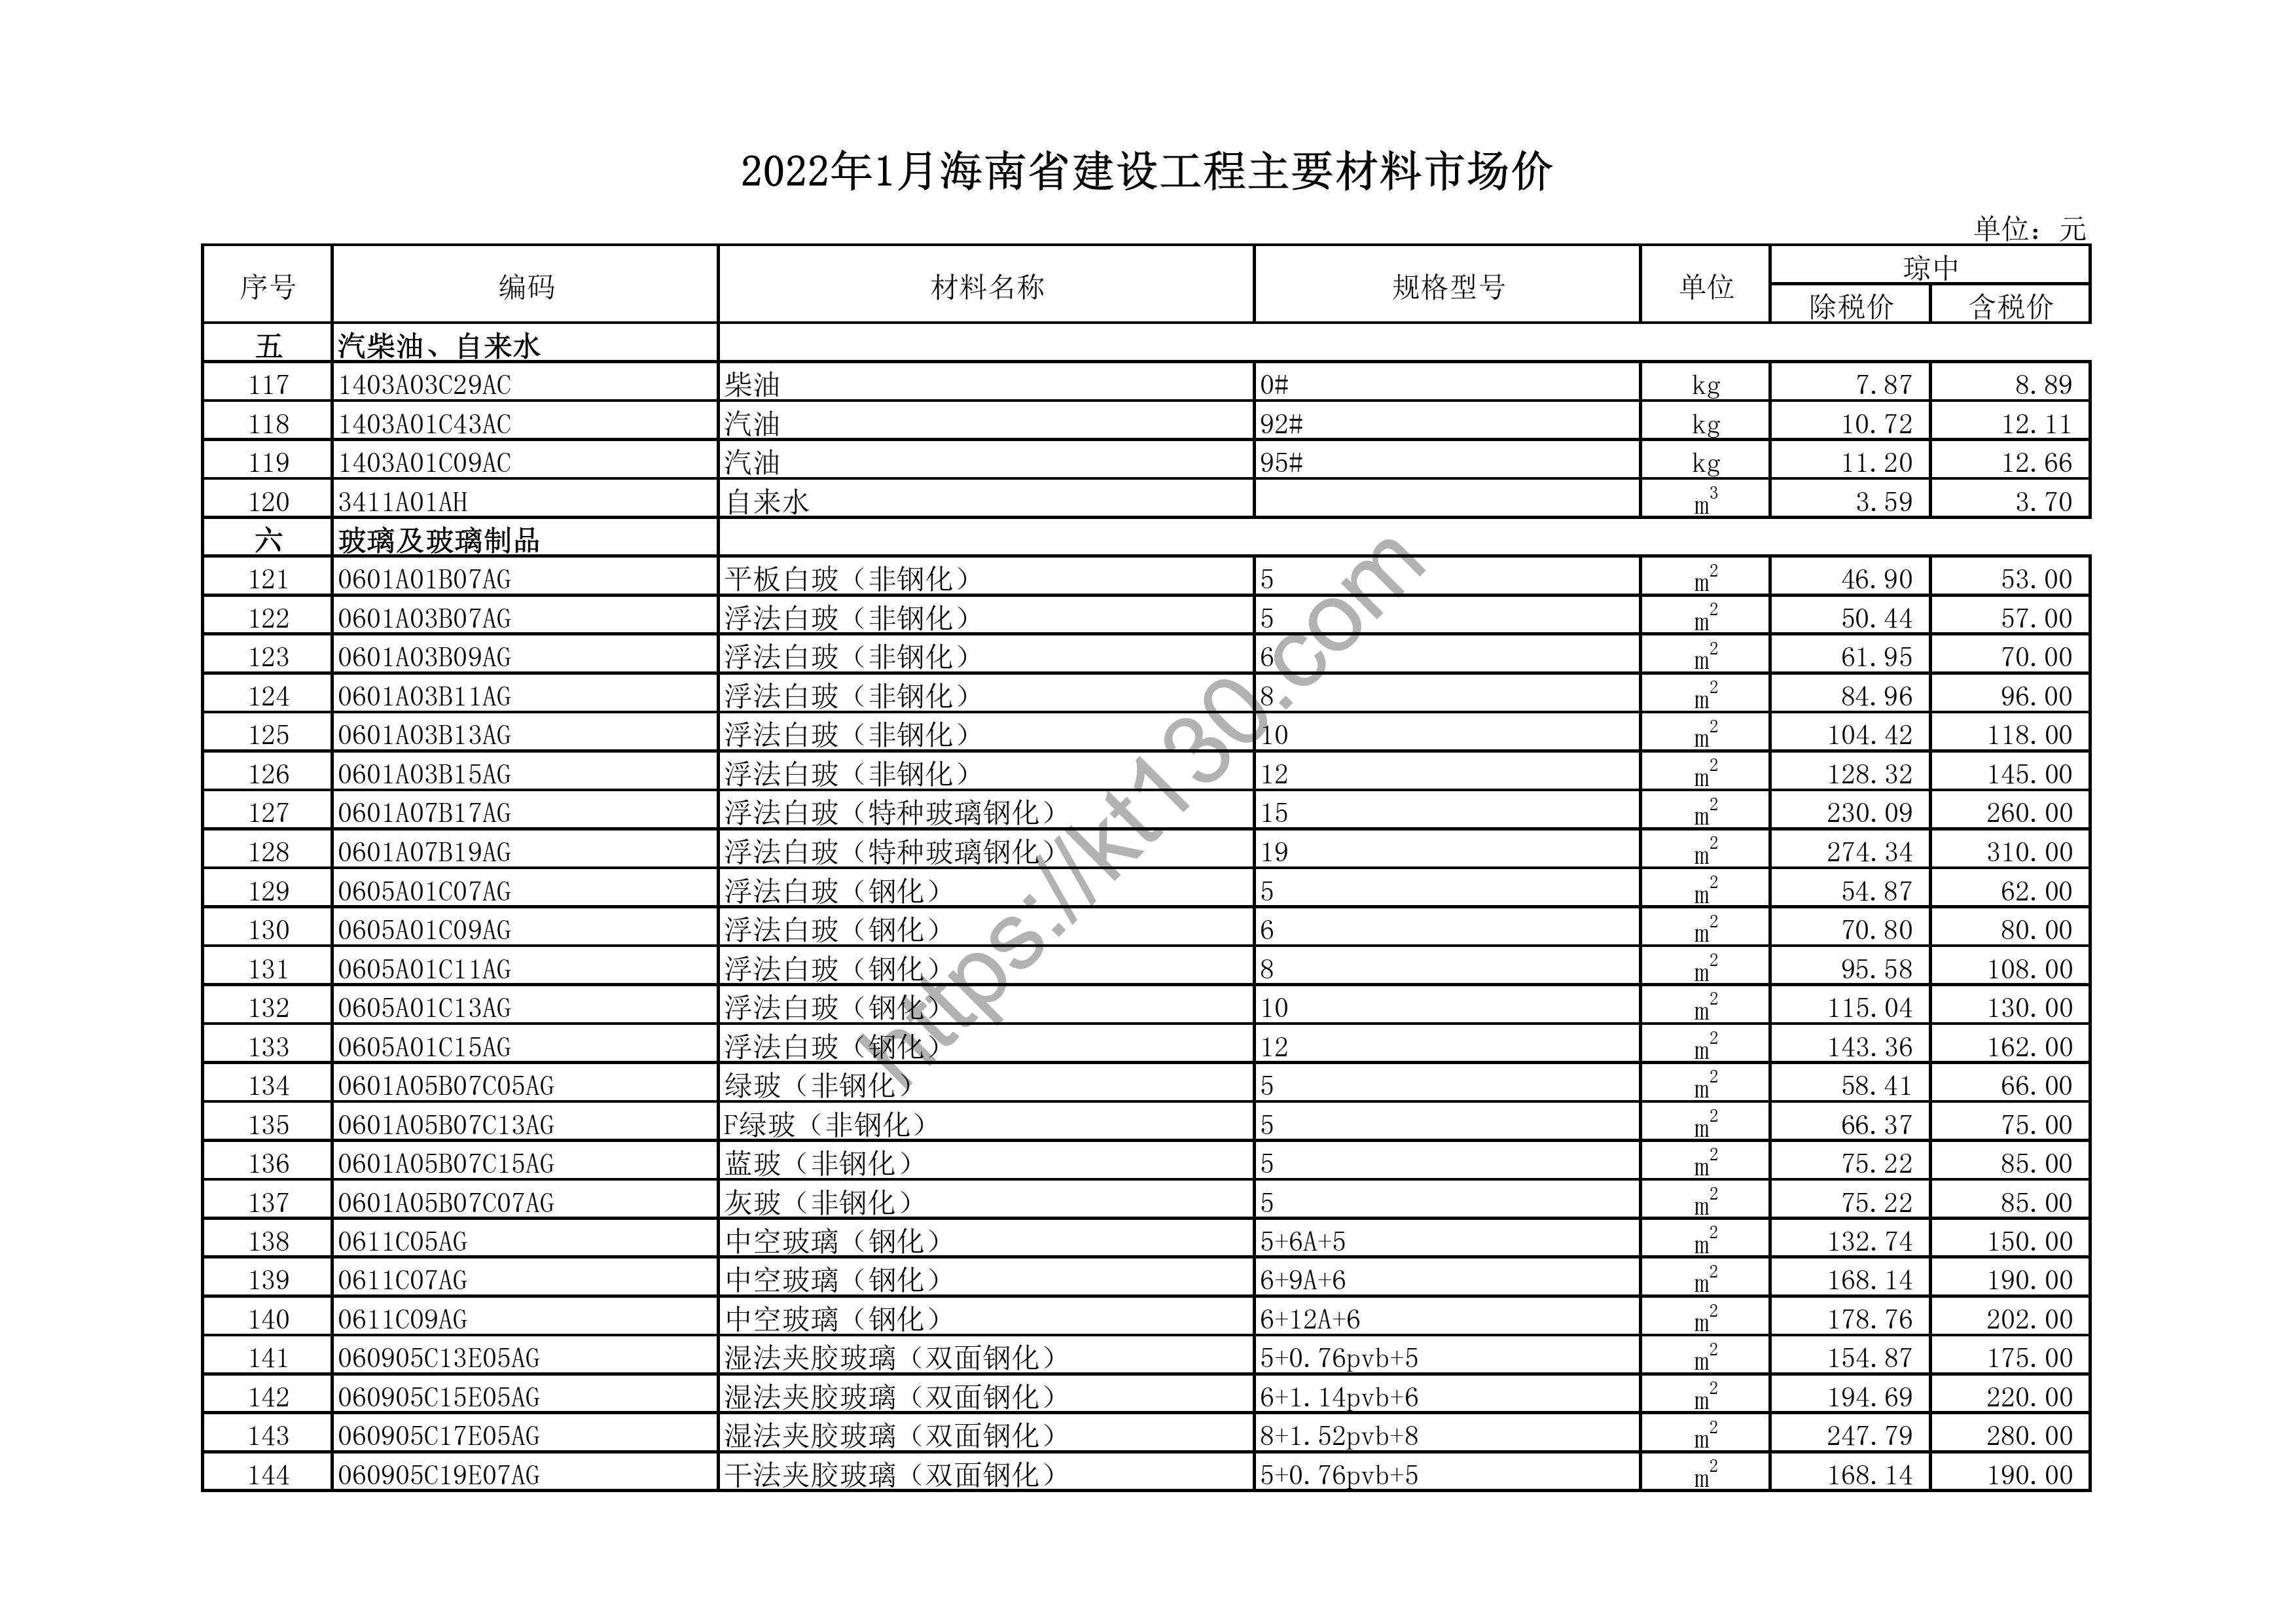 海南省2022年1月建筑材料价_中空玻璃（钢化）_43688